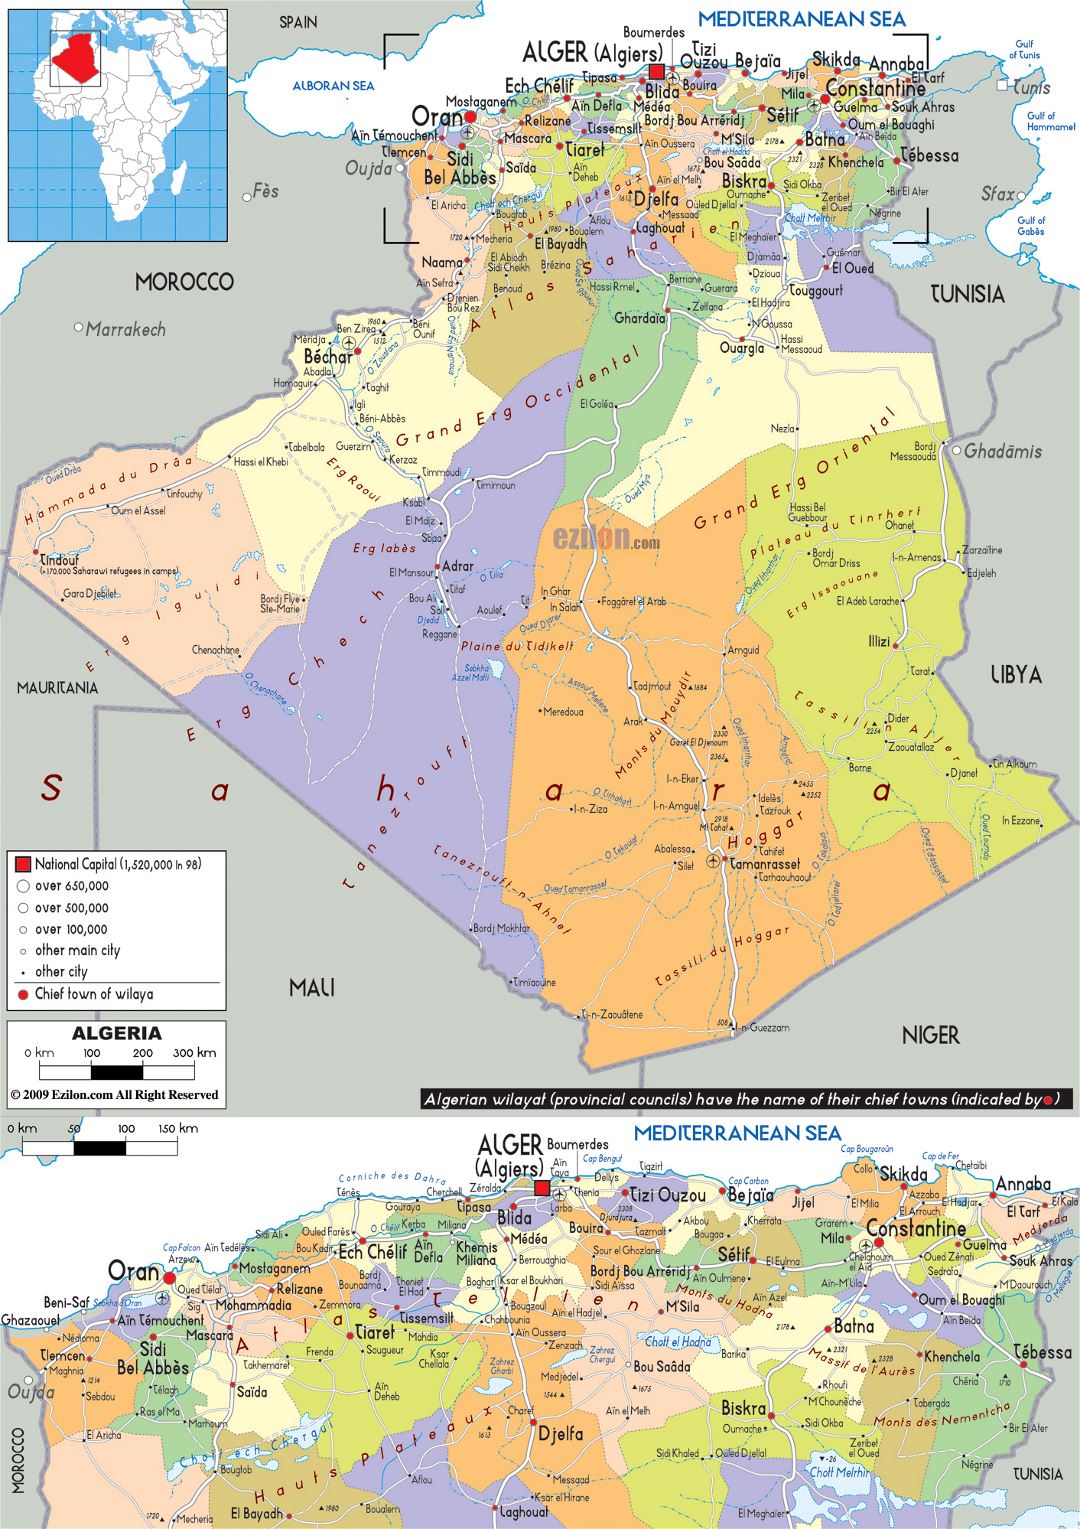 Grande mapa político y administrativo de Argelia con carreteras, ciudades y aeropuertos